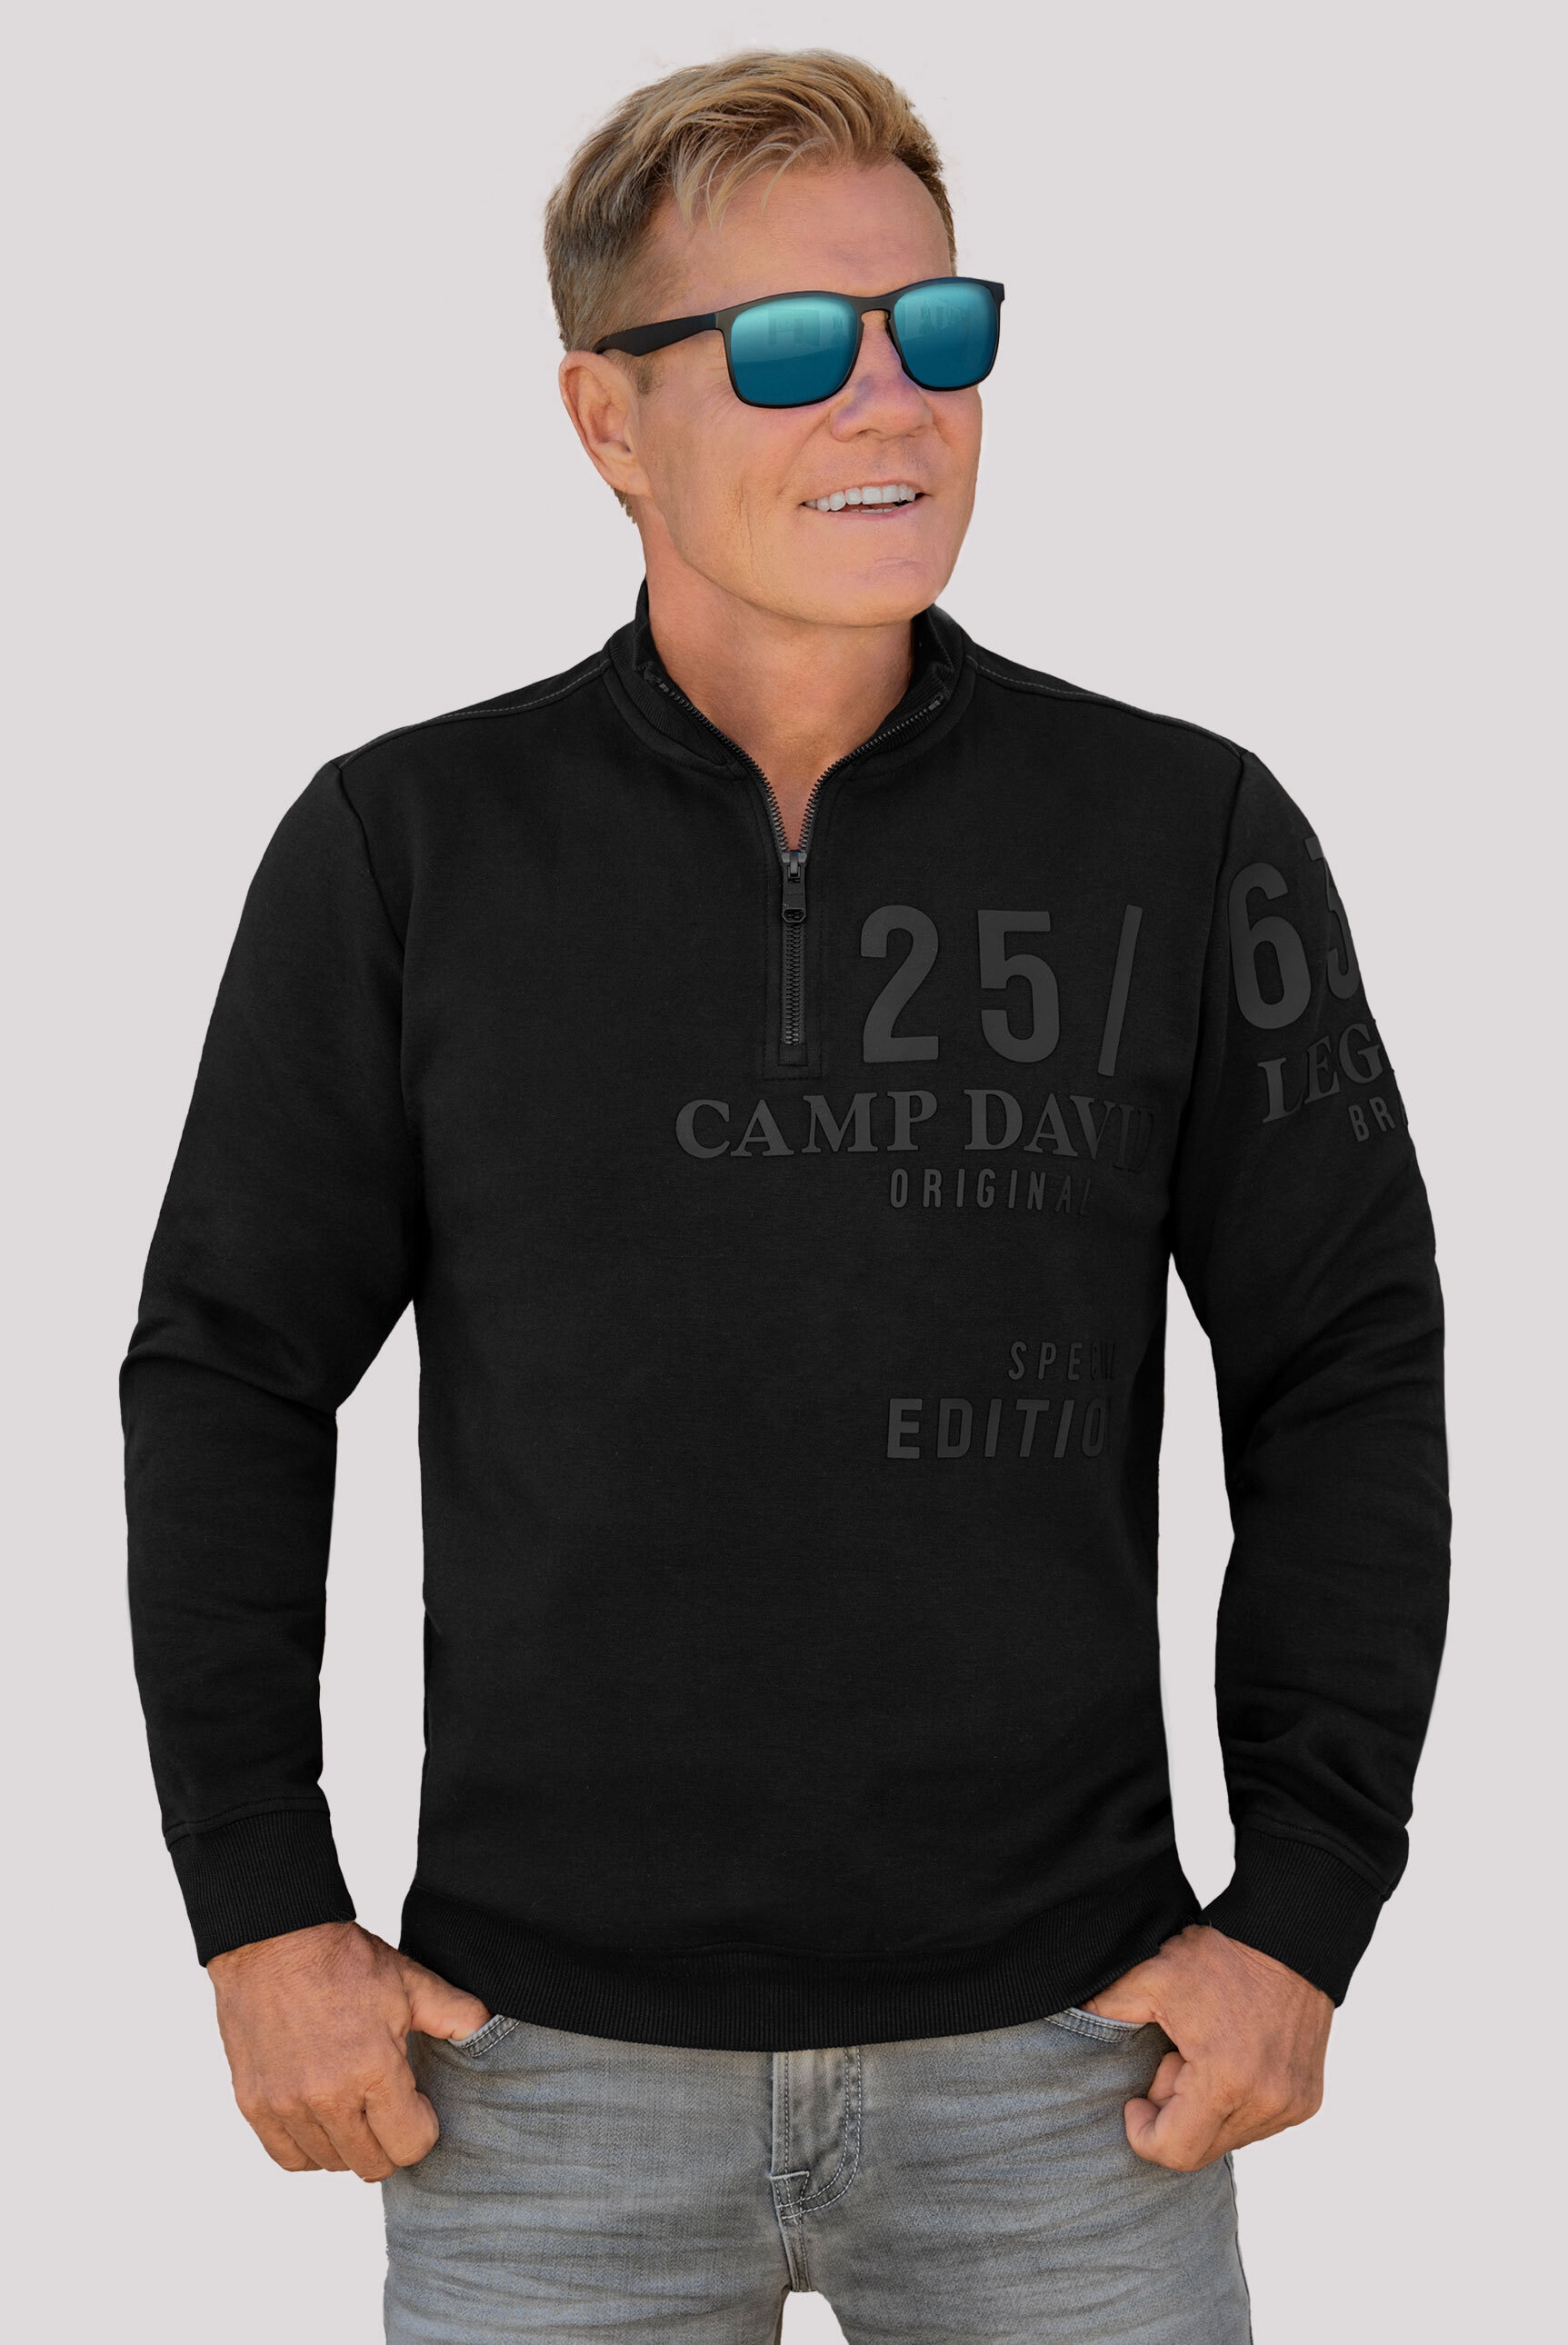 CAMP DAVID Sweater, mit Zipper am Stehkragen